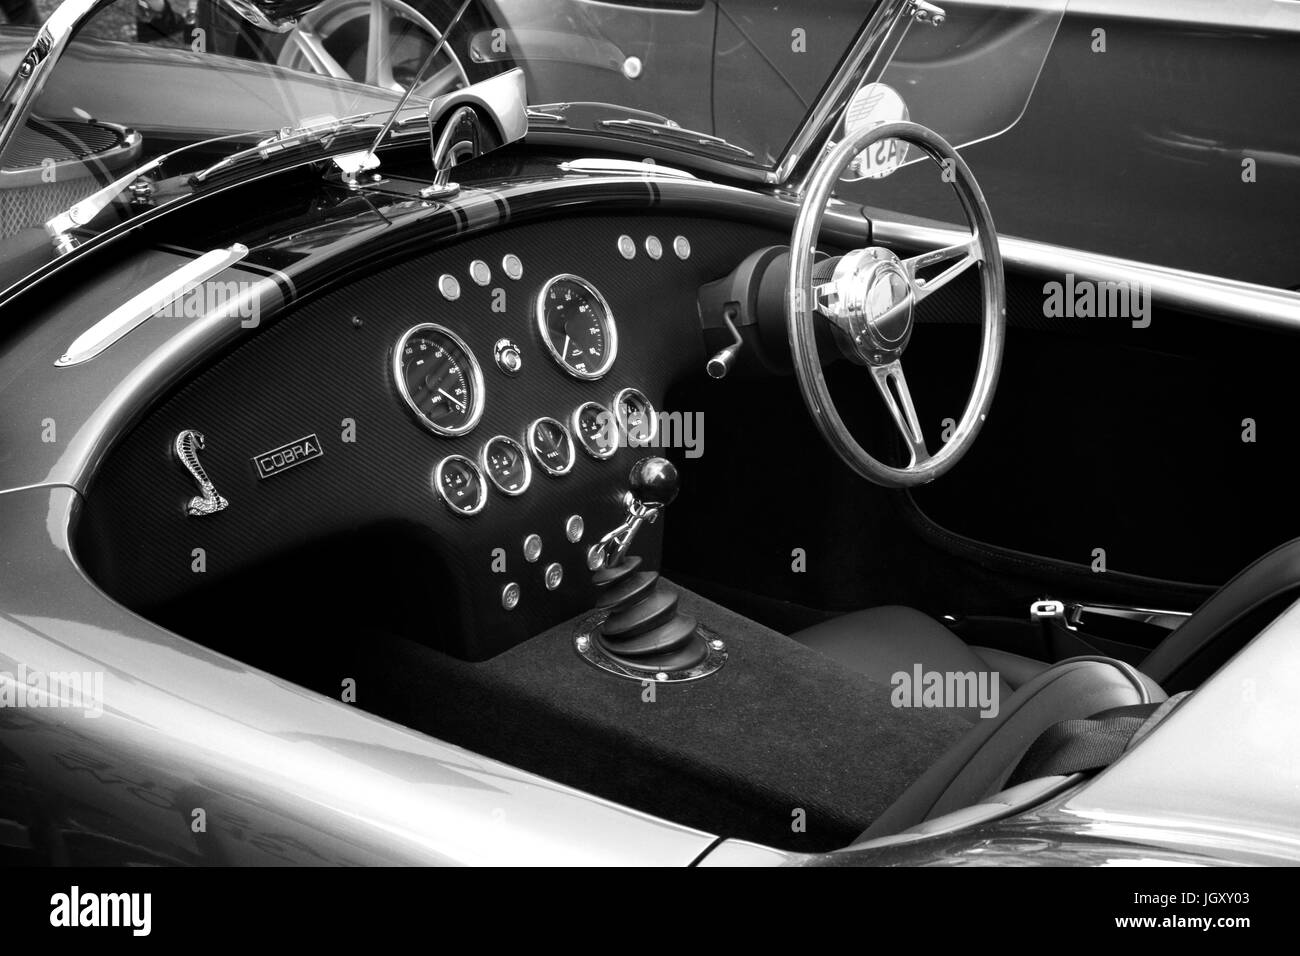 Monocromatico dei piloti cockpit di un AC Cobra Classic auto sportiva che mostra gli strumenti del cruscotto e sul volante. Foto Stock